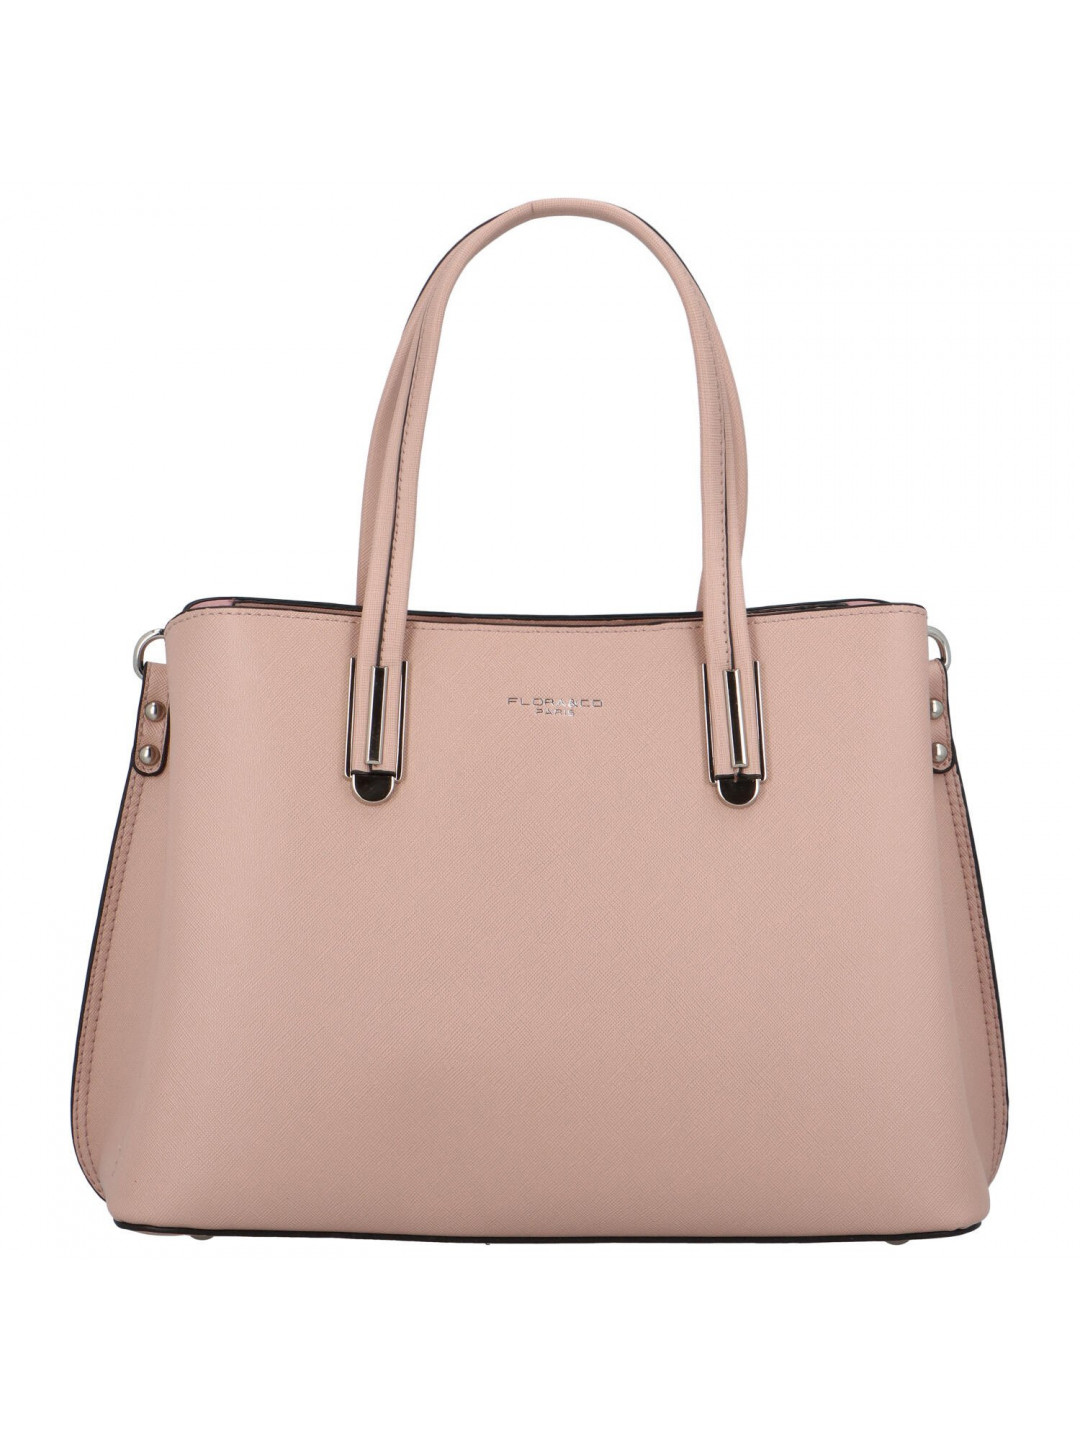 Dámská kabelka do ruky růžová – FLORA & CO Sianne